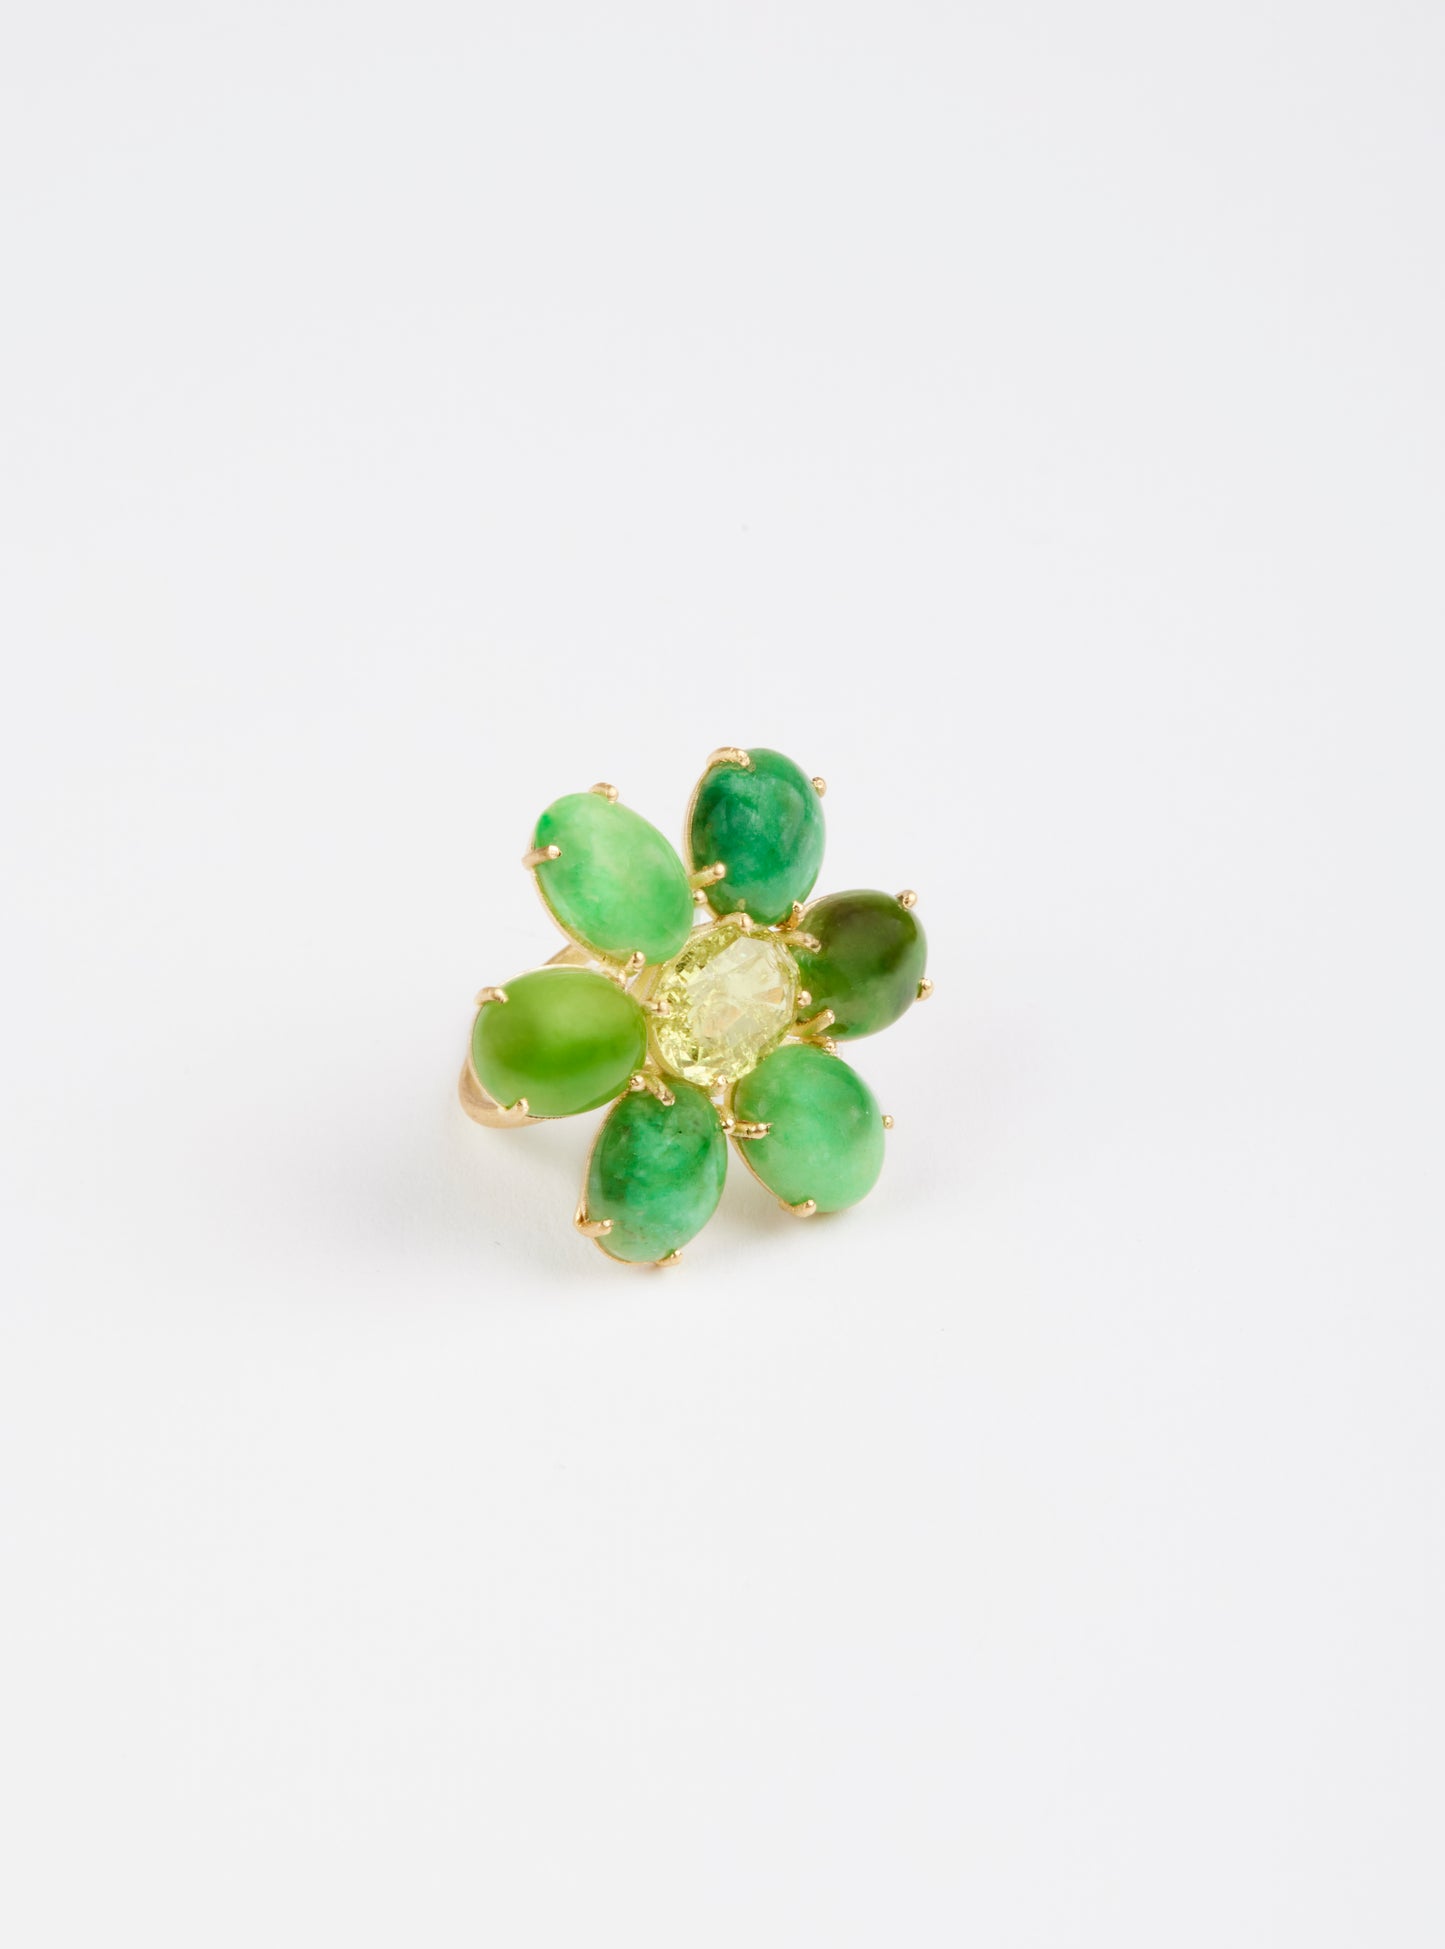 Vintage Green Jade and Sphene Flower Ring